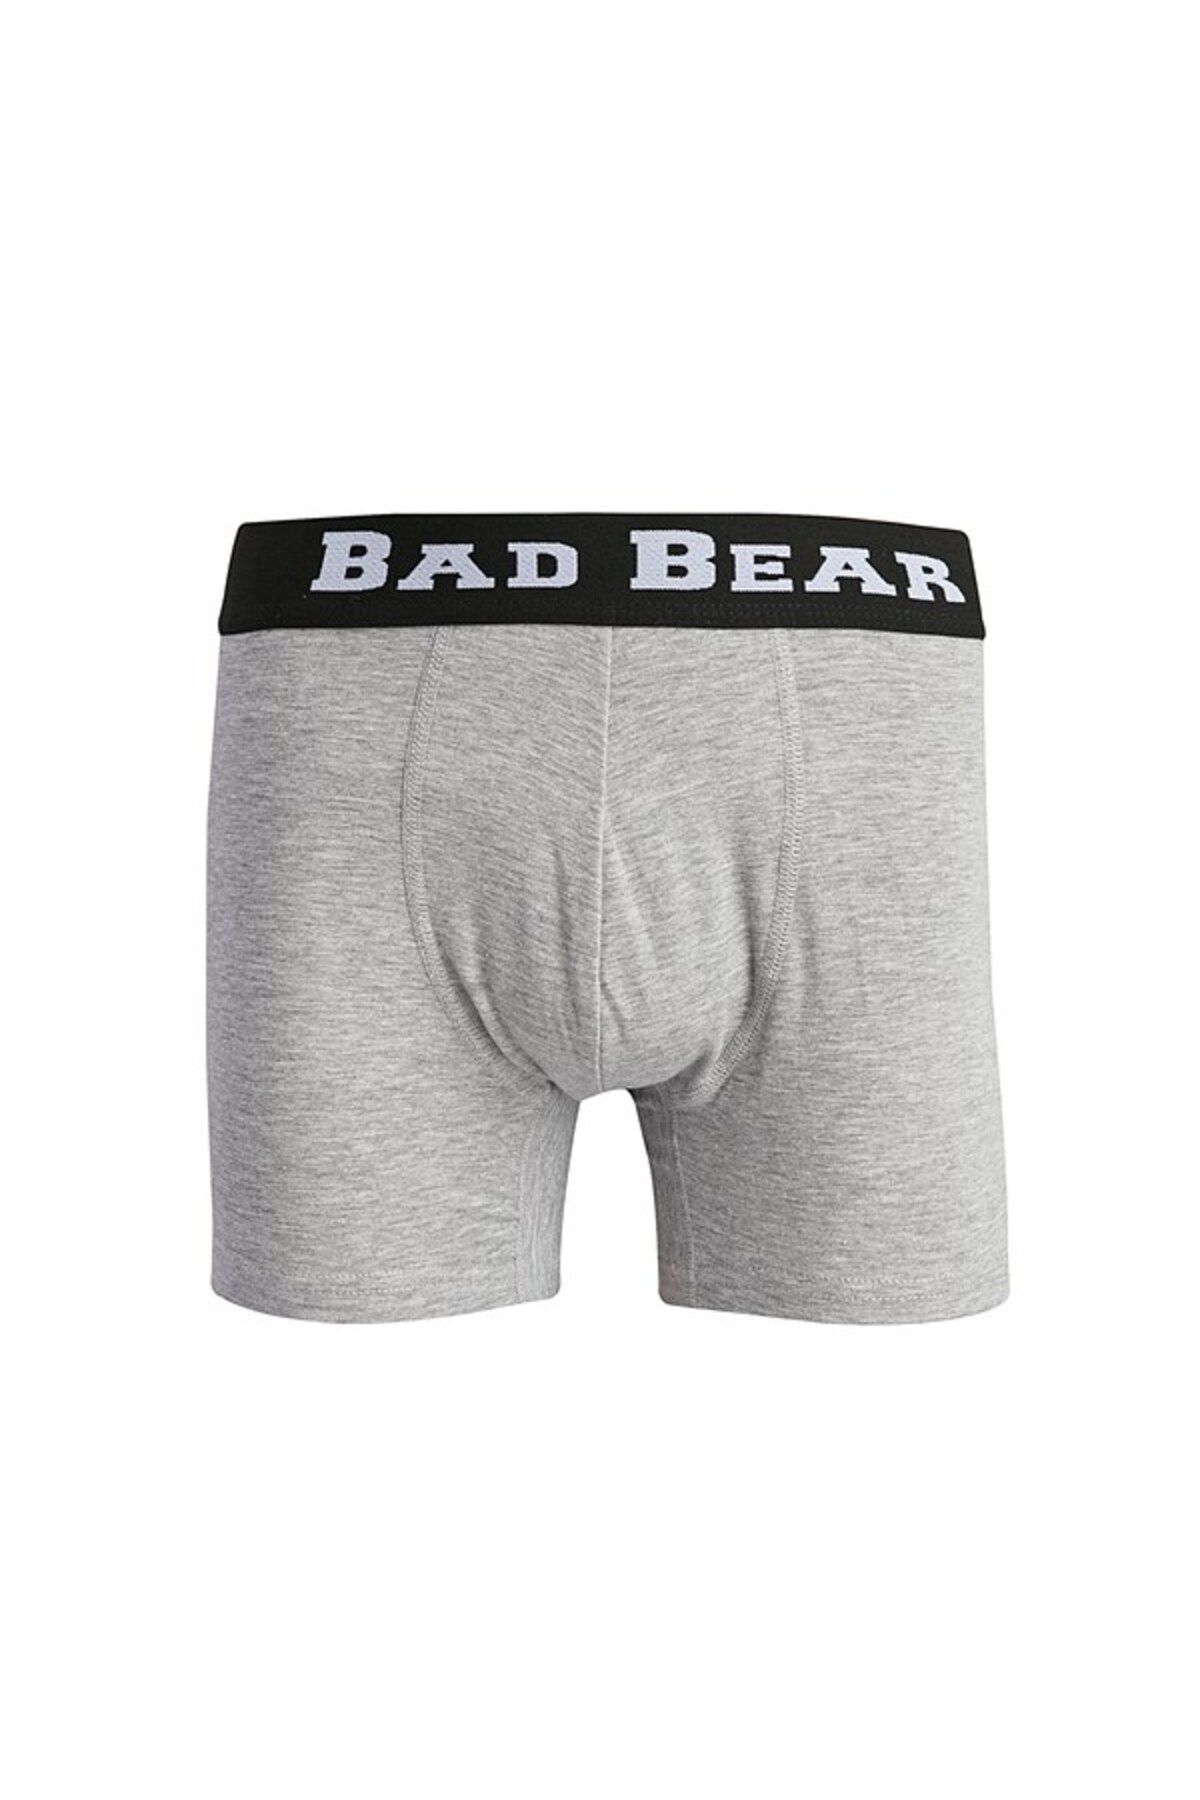 Bad Bear Erkek Graymelange Boxer 18.01.03.019-c19